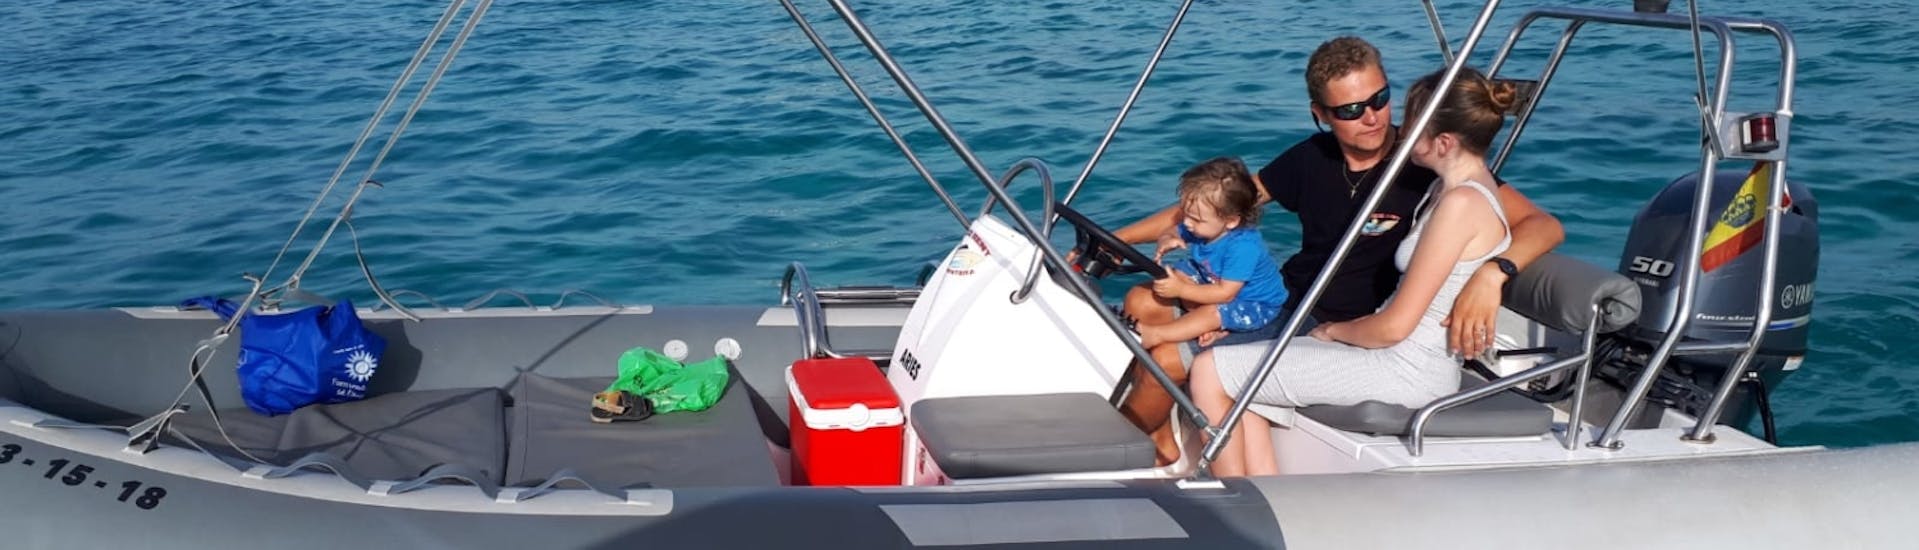 Ein Boot zu mieten mit Lizenz in Formentera für bis zu 4 Personen mit Barco Rent Formentera.